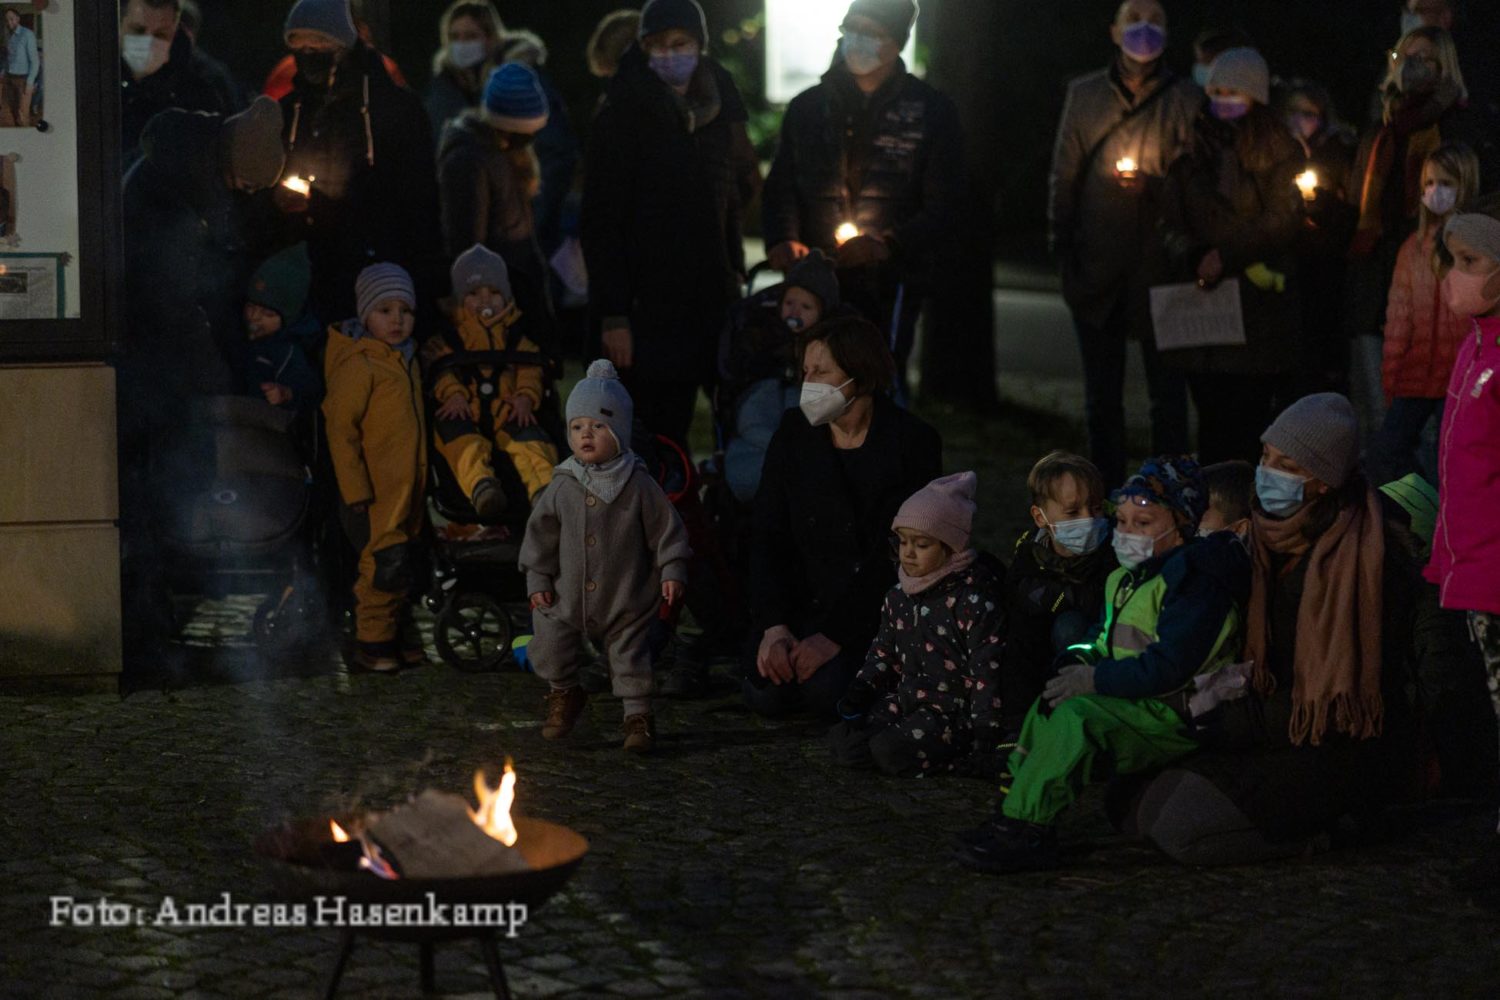 Familien-Wortgottesdienst zum Fest des Heiligen Nikolaus in St. Nikolaus Münster in Wolbeck am 5.12.2021. Foto: A. Hasenkamp.